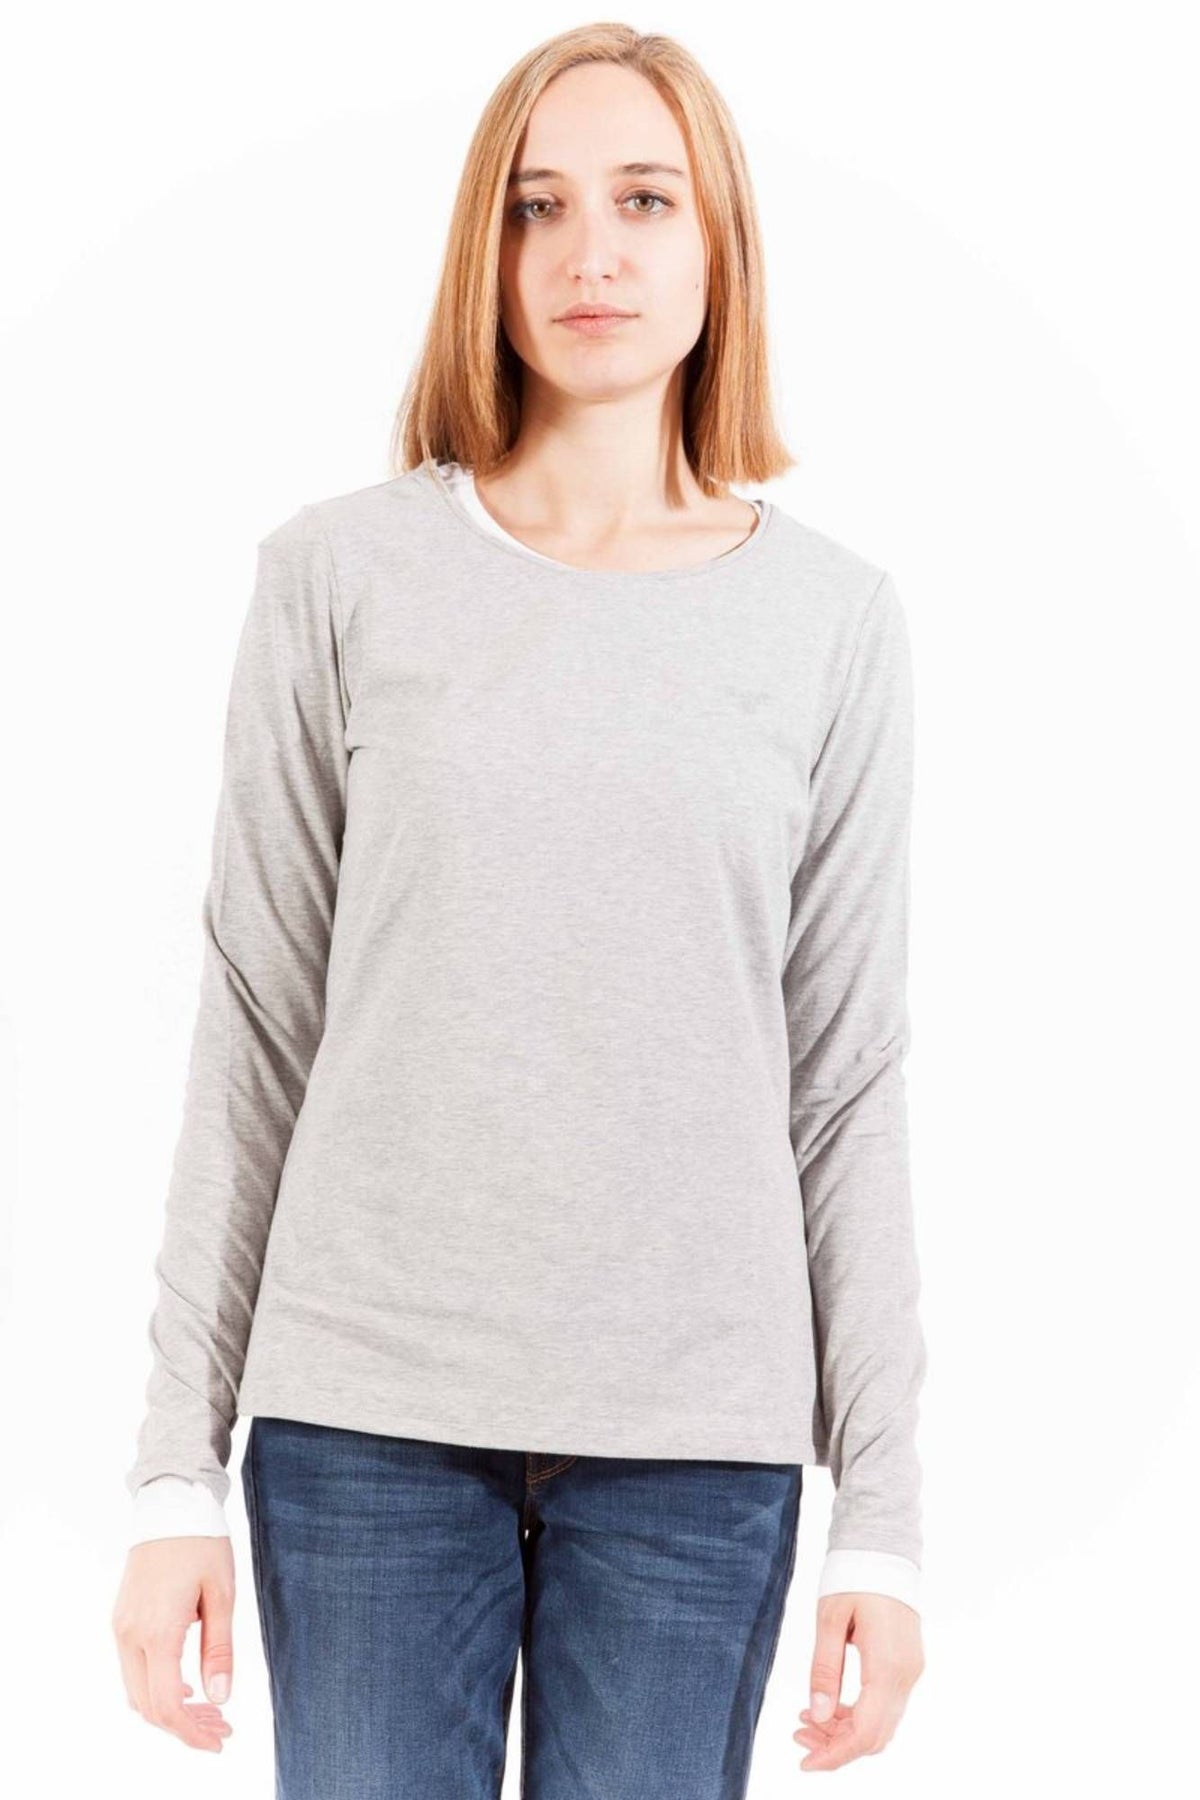 Gant Damen Pullover Sweatshirt mit Rundhalsausschnitt, langarm